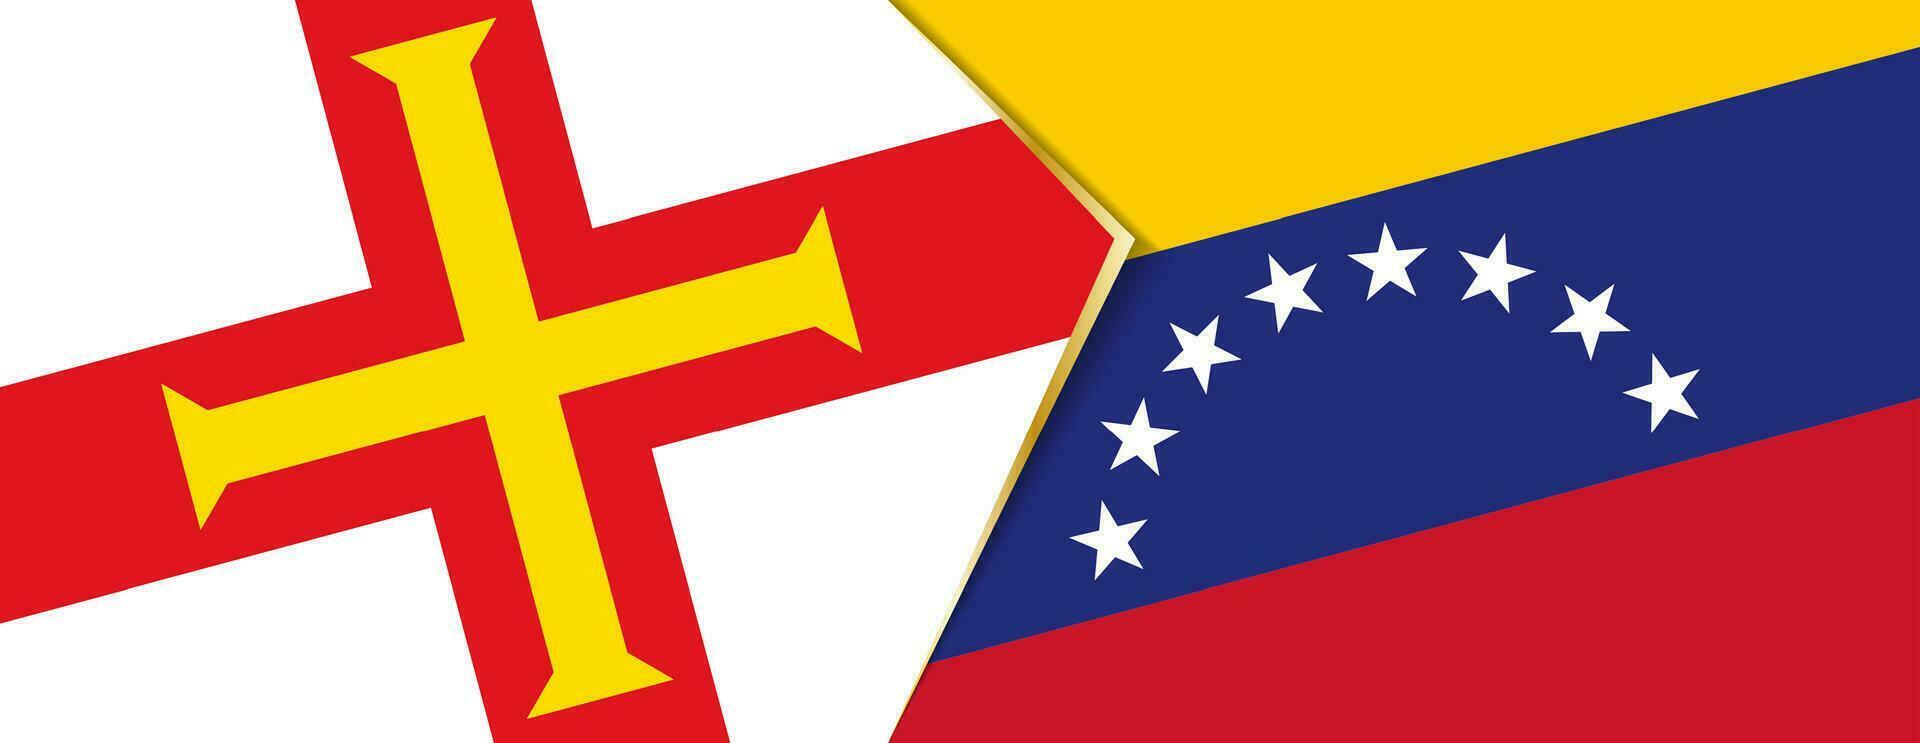 Guernsey und Venezuela Flaggen, zwei Vektor Flaggen.